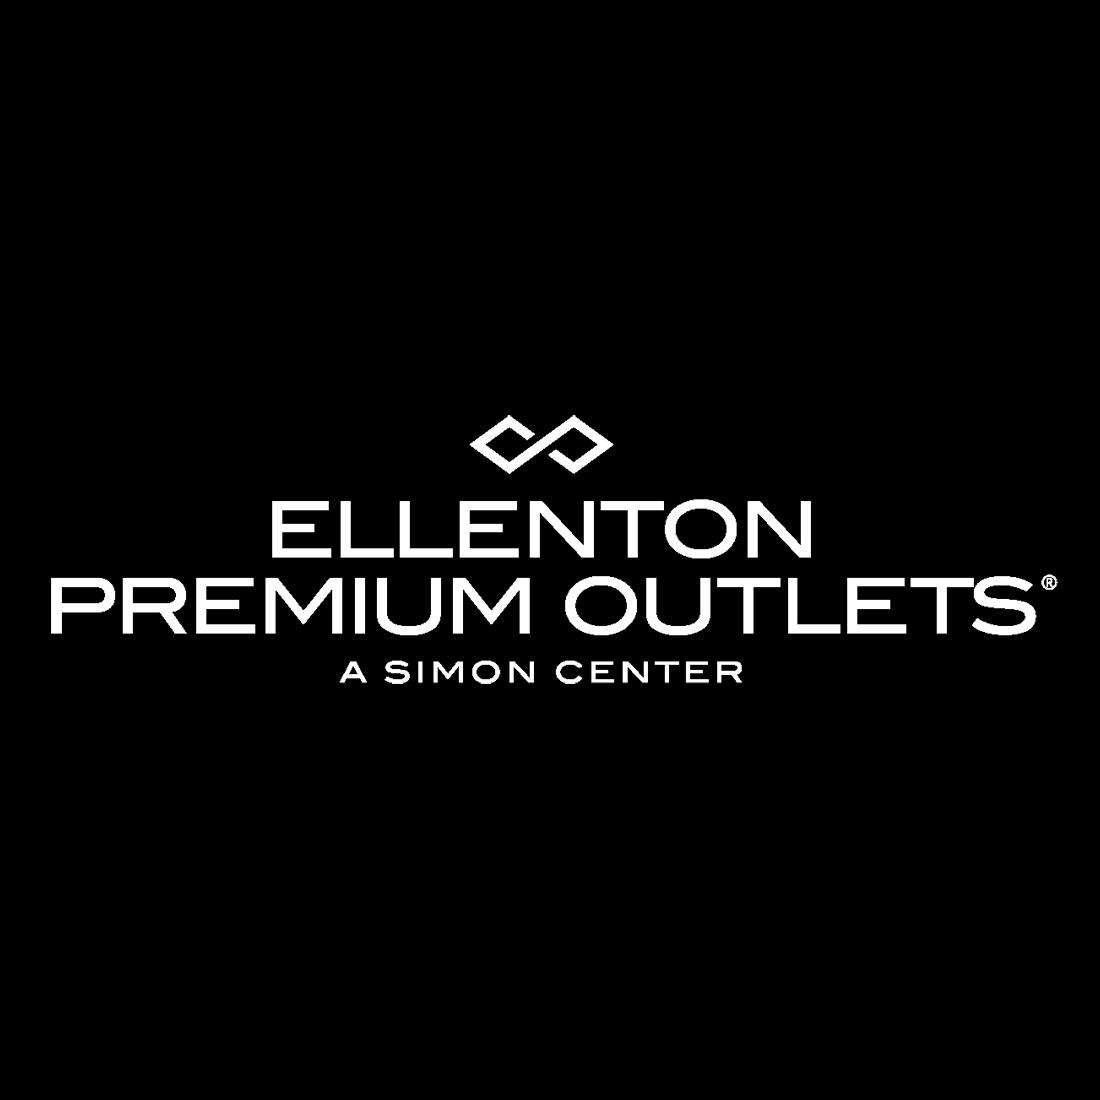 Ellenton Premium Outlets - Ellenton, FL - Business Profile